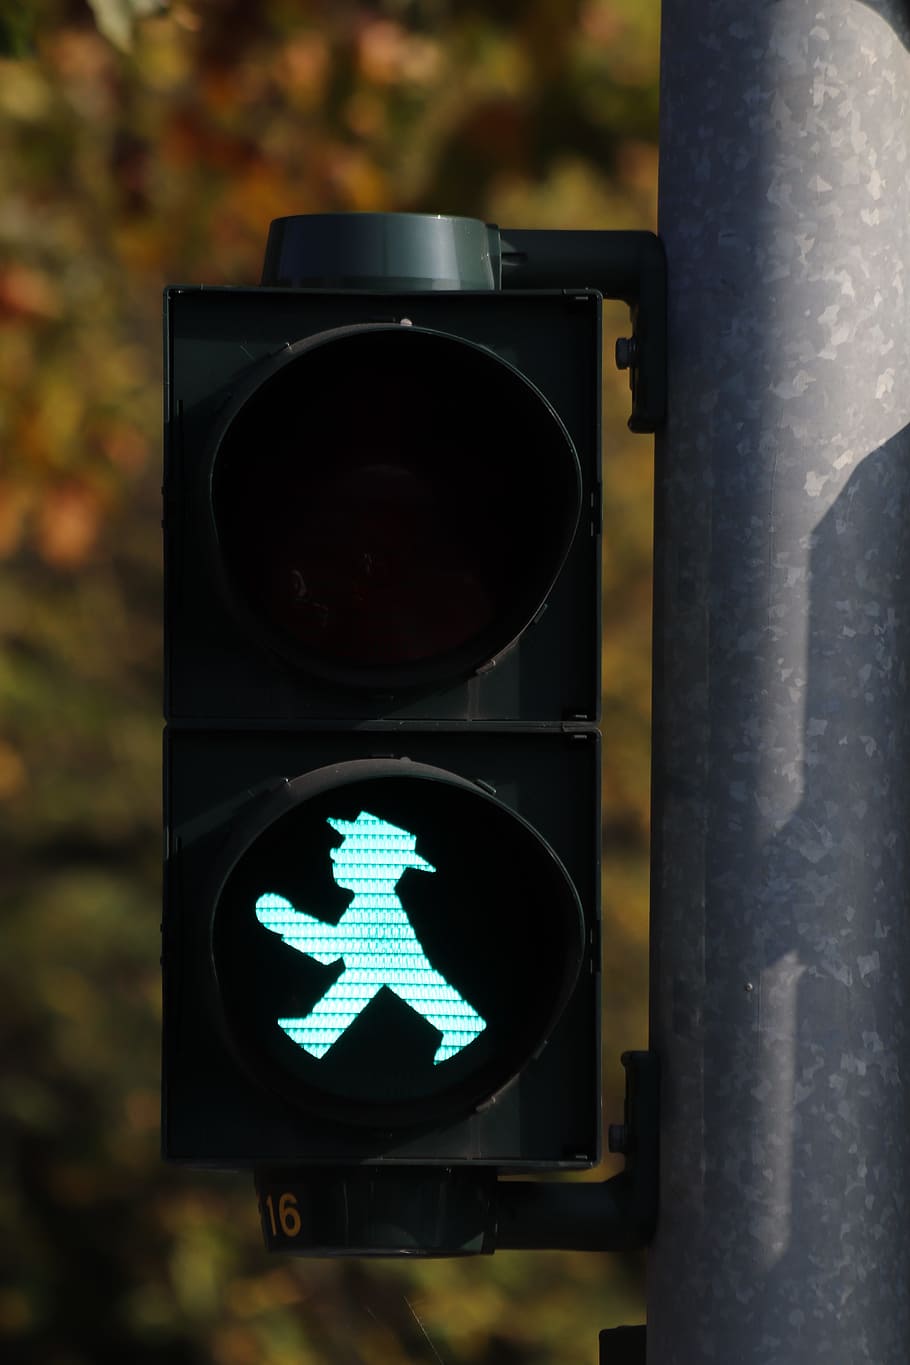 negro, caminar, luz de señalización, hombrecito verde, semáforos, verde, paso de peatones, señal de tráfico, cruz, señal luminosa